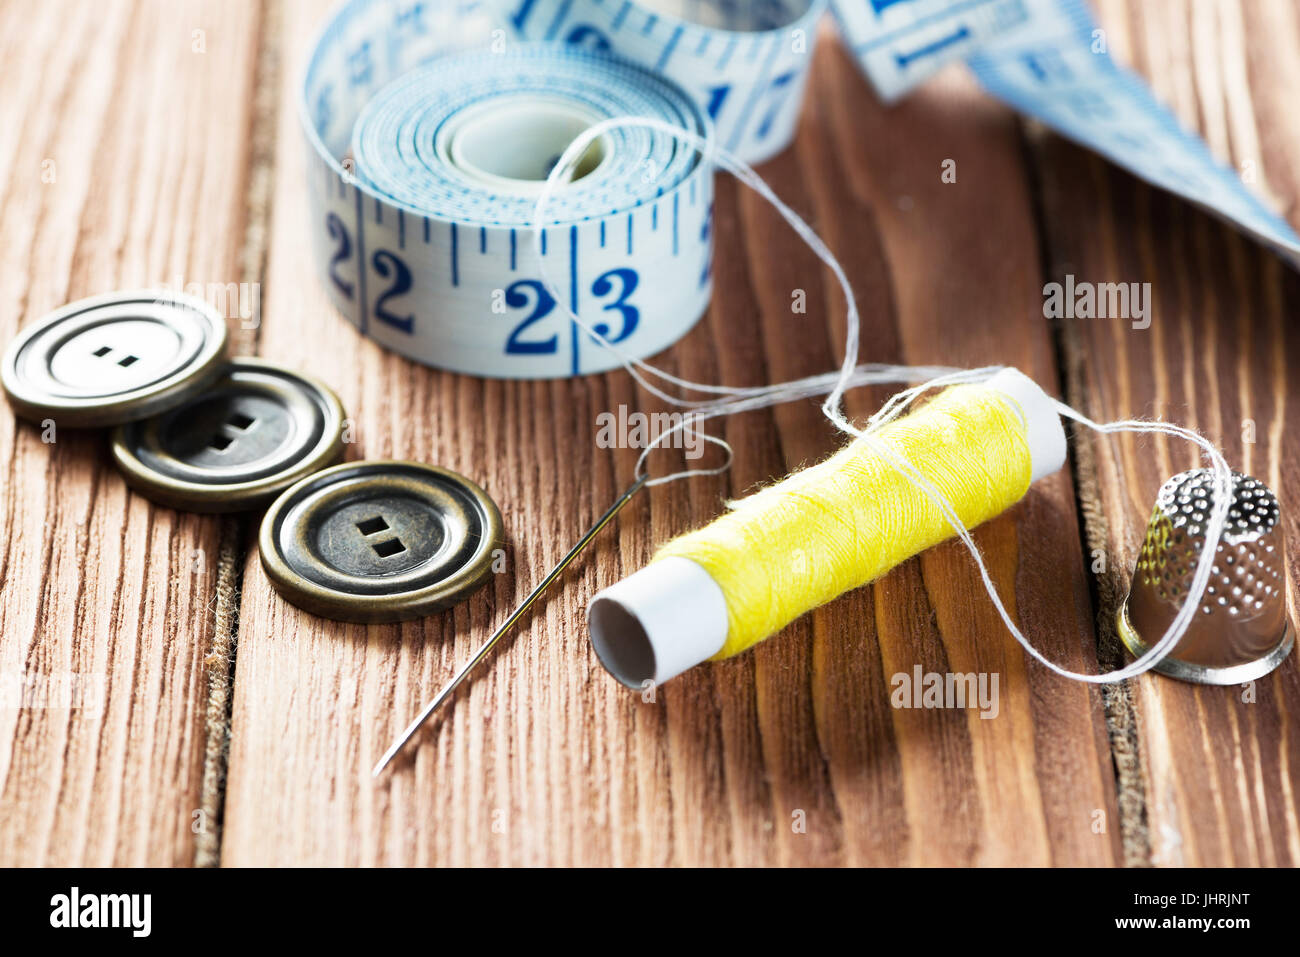 Elementos para coser o DIY Foto de stock